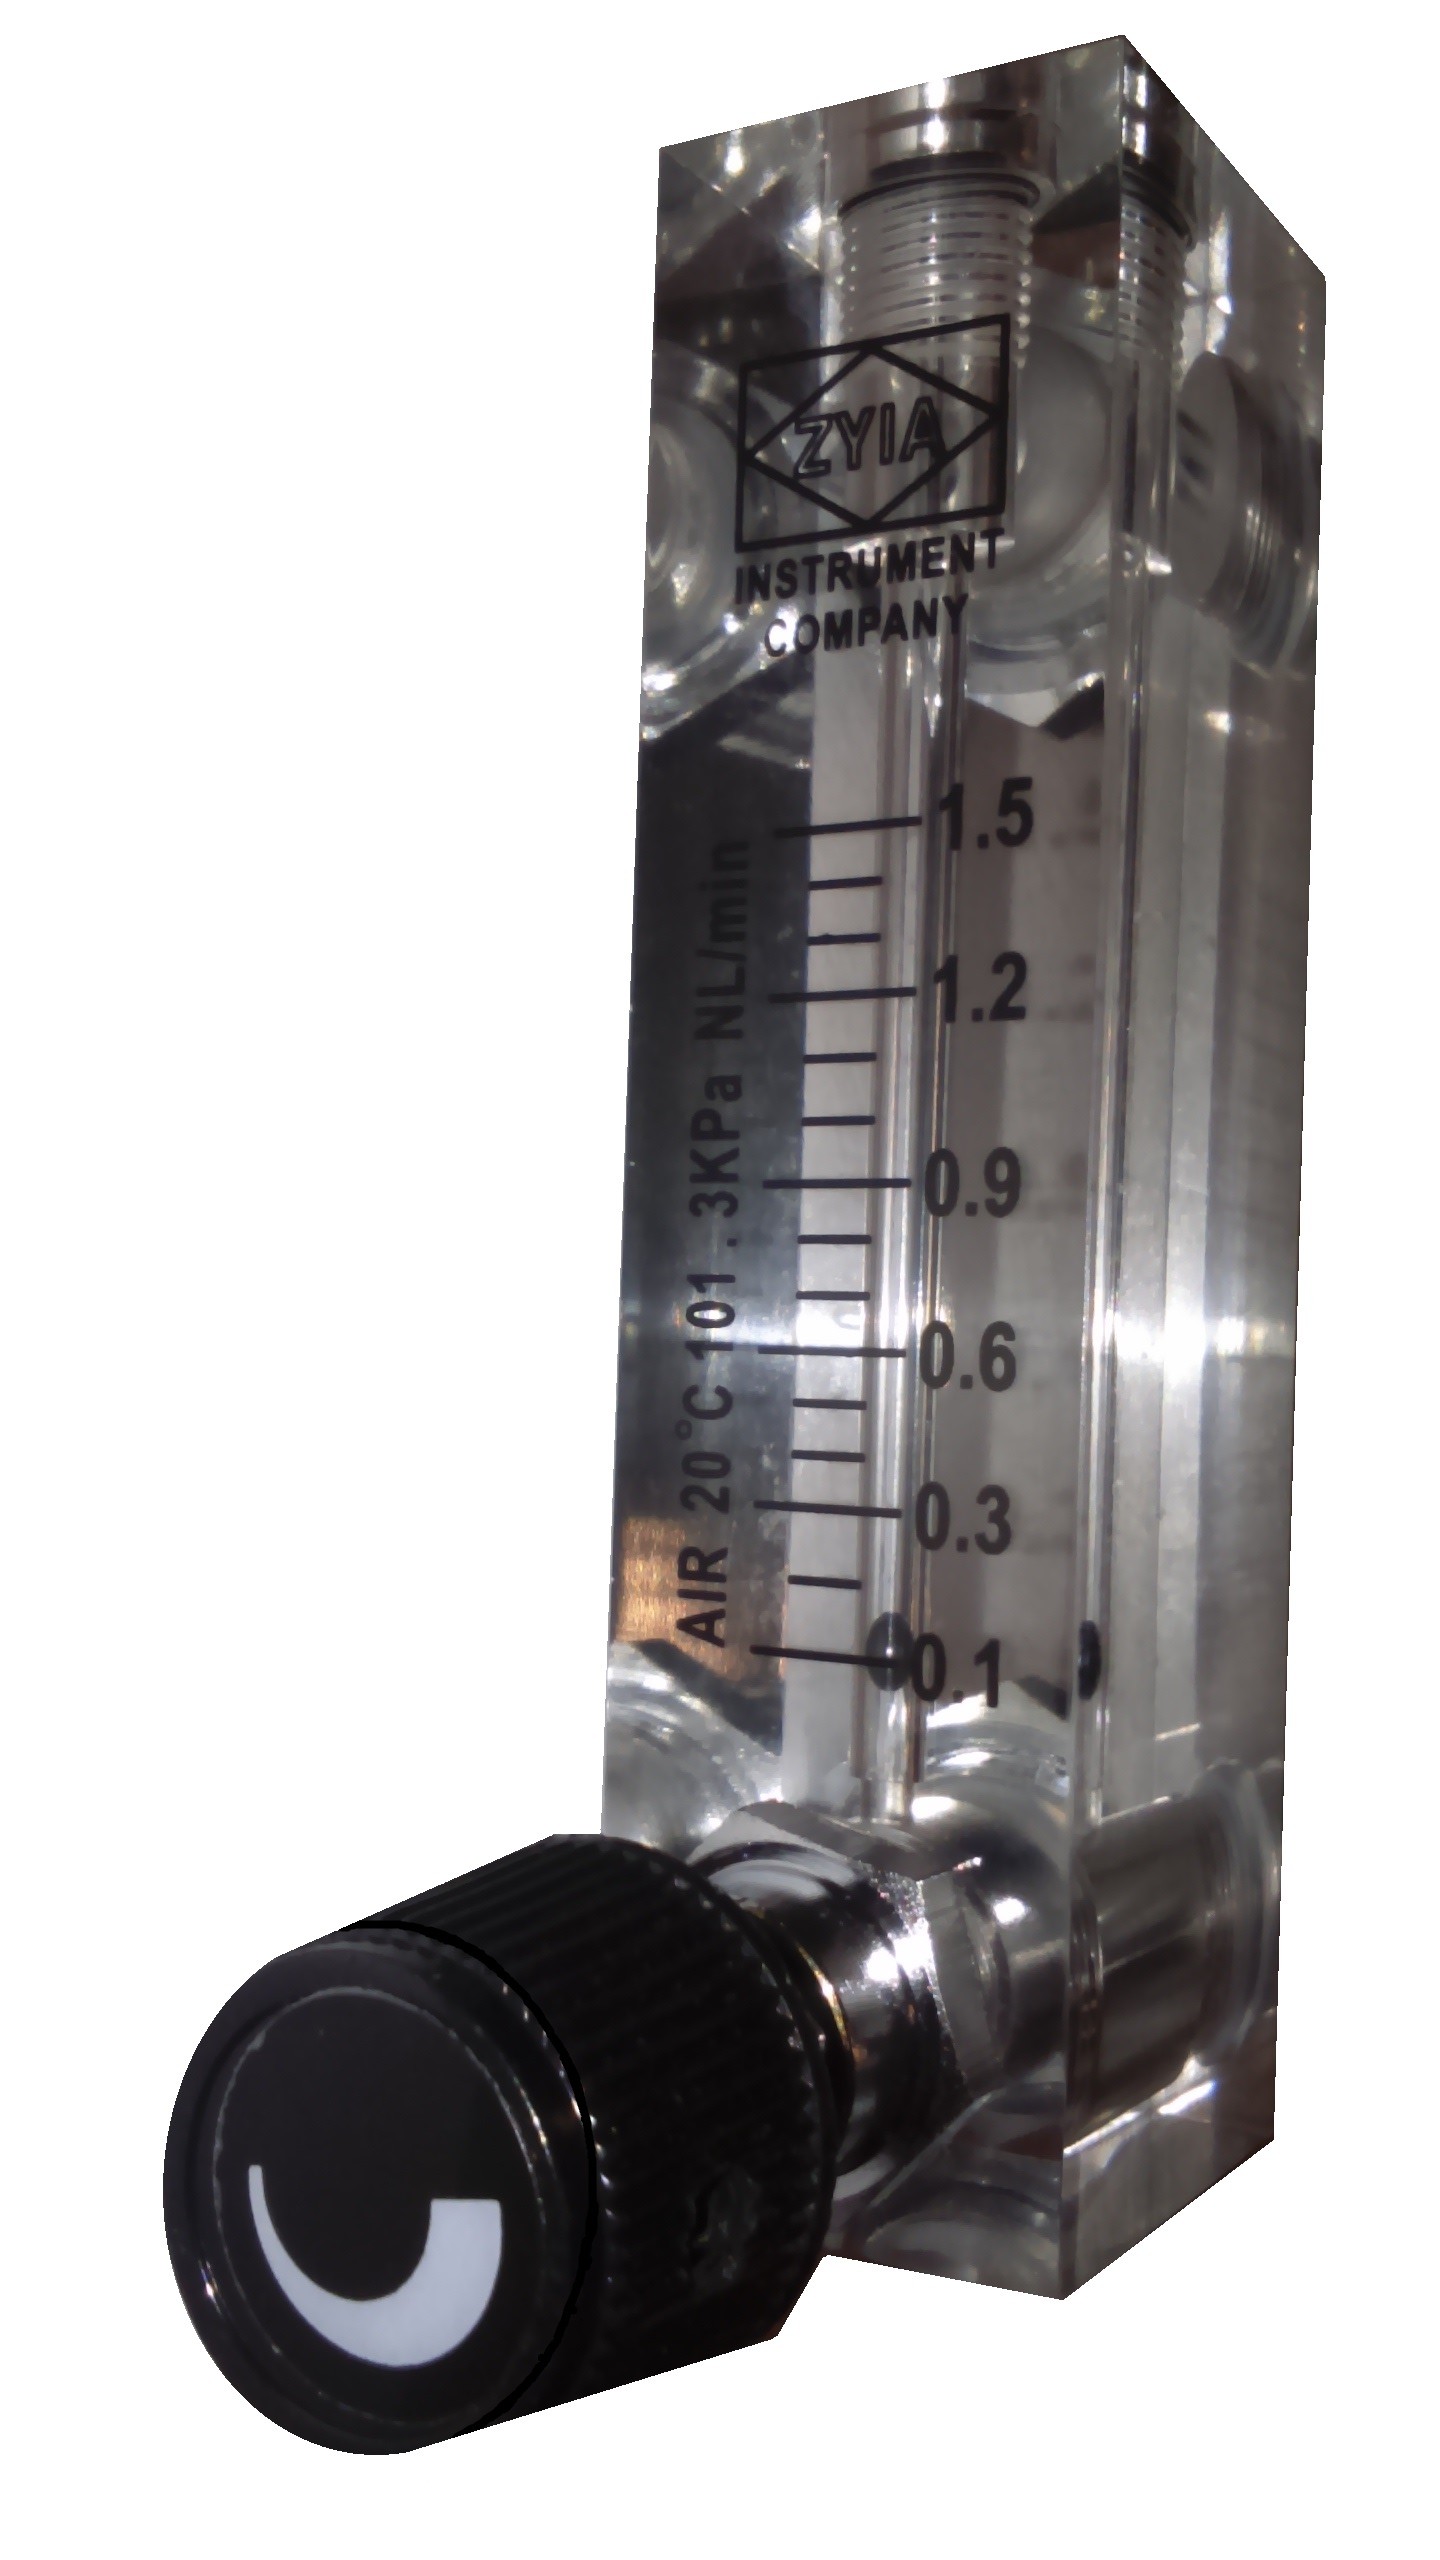 Rotametr z regulacją do powietrza 0,1 - 1,5 l/min